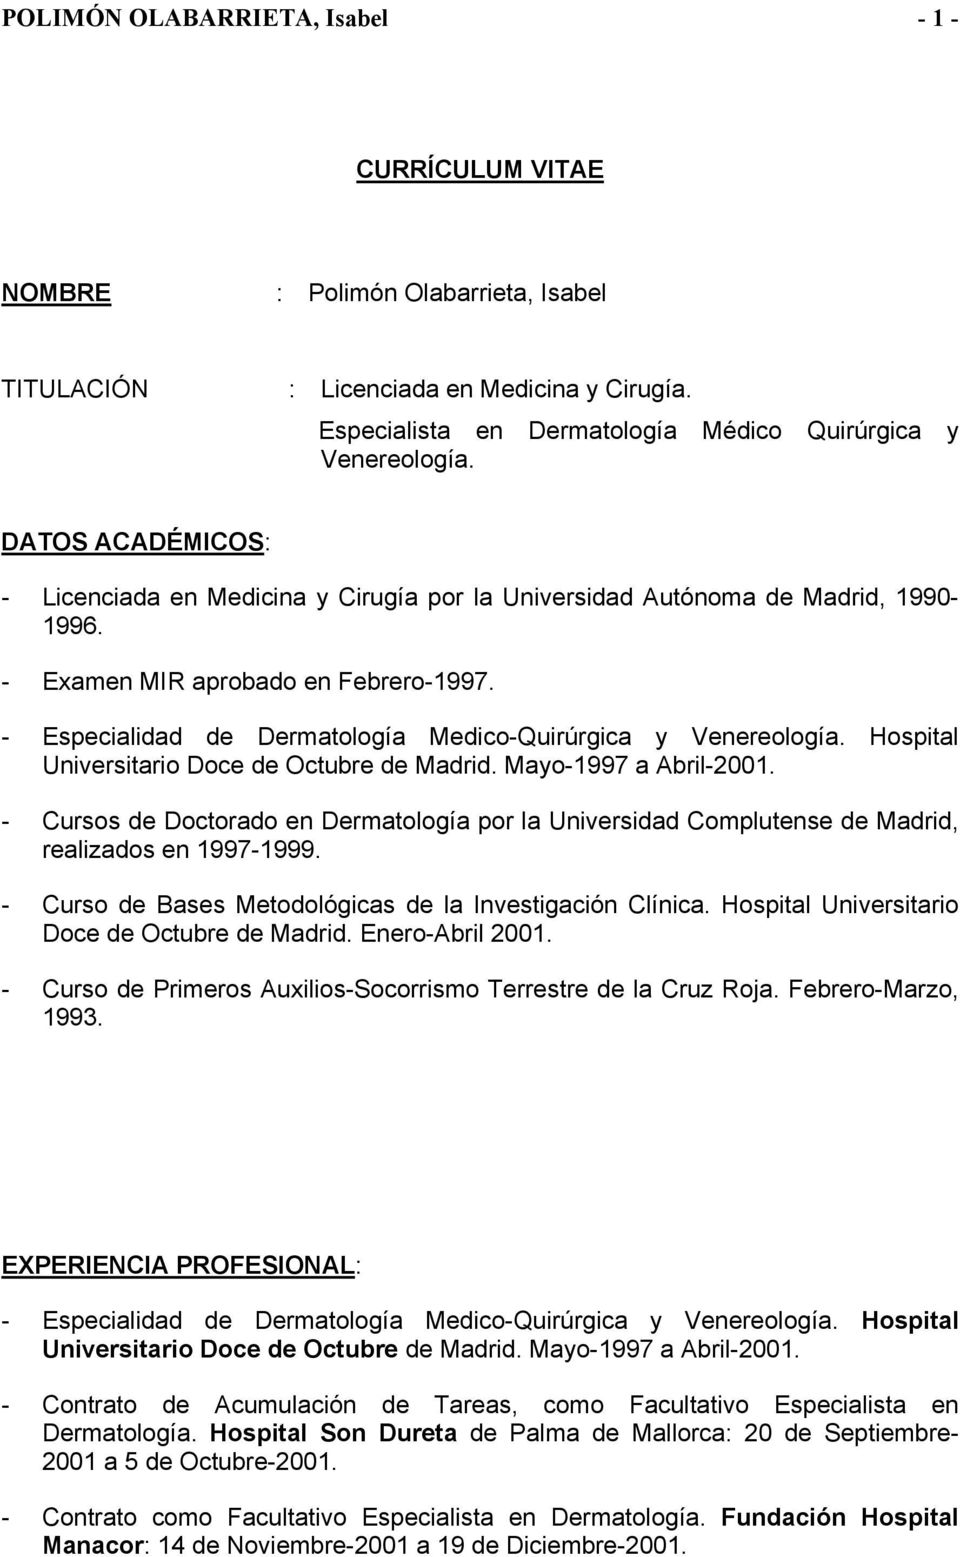 - Especialidad de Dermatología Medico-Quirúrgica y Venereología. Hospital Universitario Doce de Octubre de Madrid. Mayo-1997 a Abril-2001.